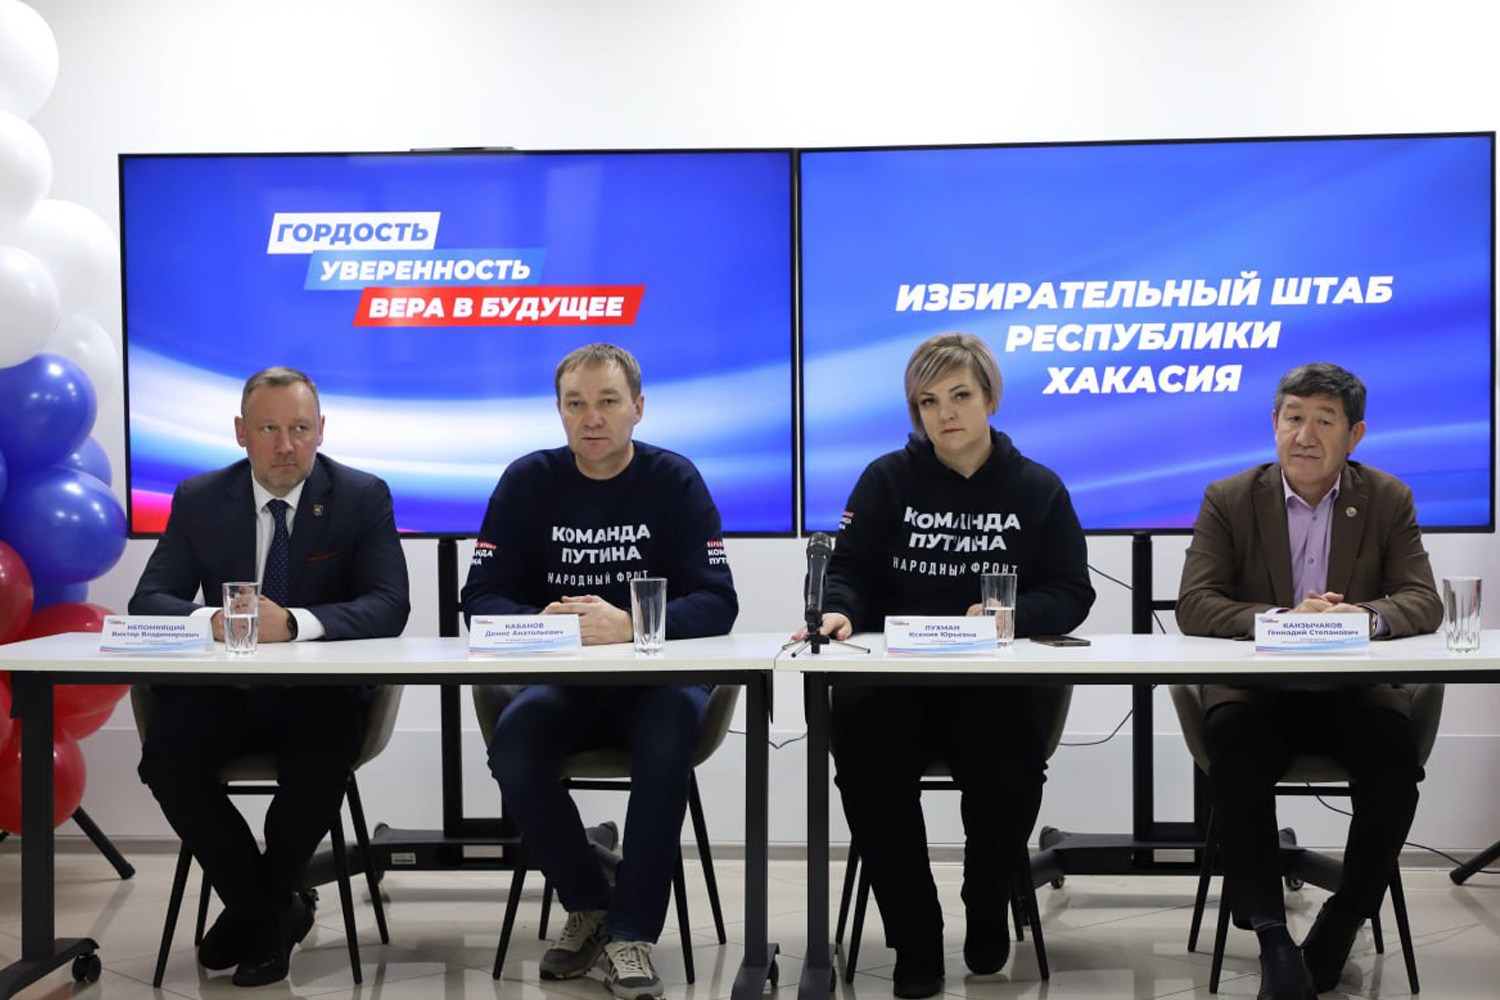 Региональный избирательный штаб Президента России Владимира Путина открылся в Хакасии